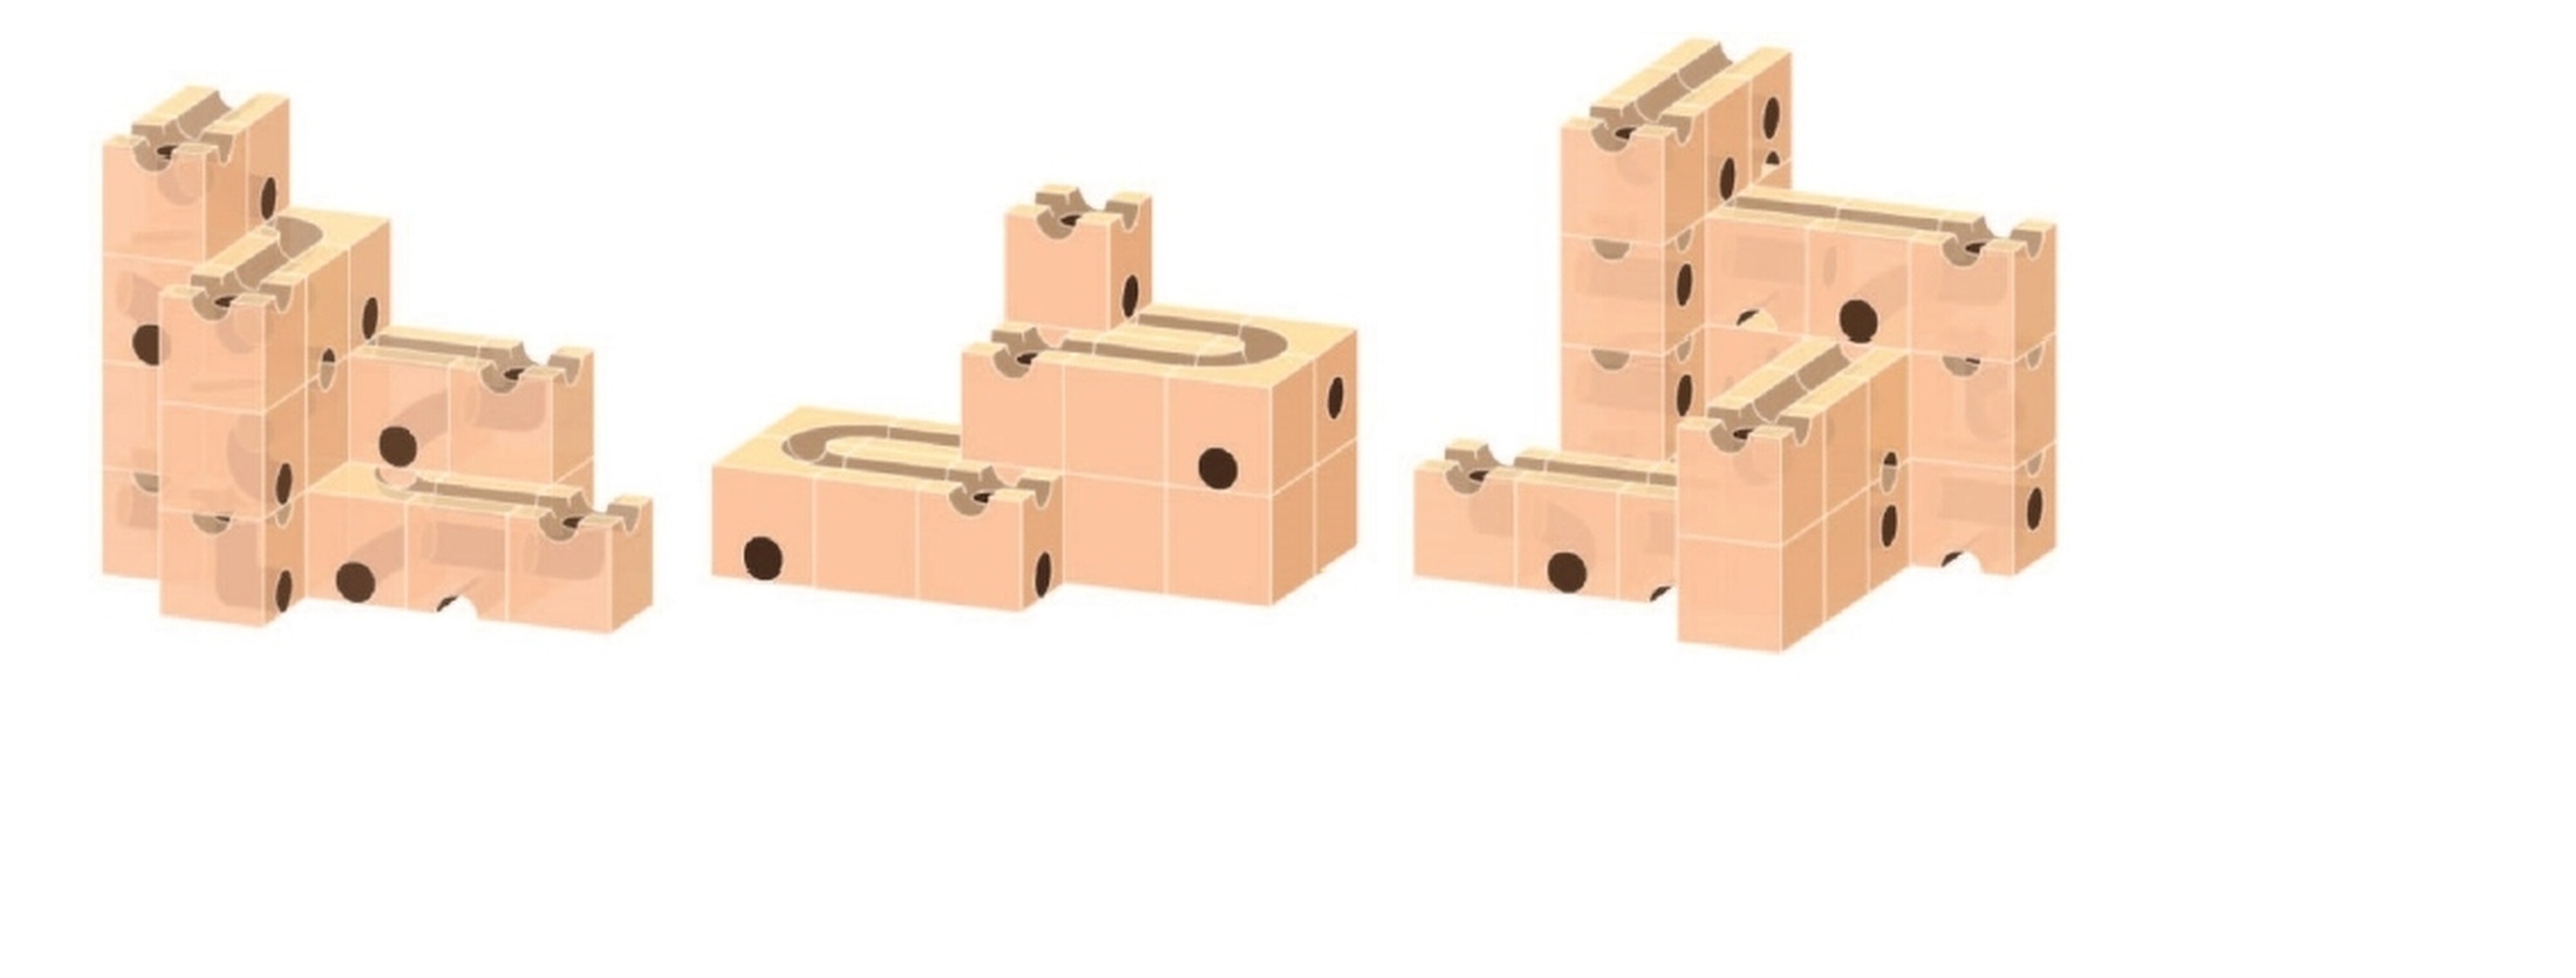 <p>Рассматривая подобные варианты ответов, можно составить задачу:  «Постройте конструкция в которой кубики, формирующие движение дорожки,  будут только с прямым желобом», «Составьте конструкции в которой  количество, формирующий движения кубиков от уровня к уроню, будет  чередоваться (например, 2 и 3). Конструкция не менее 4х уровней»,  «Постройте конструкцию в которой будет представлена два симметричных  отрезка, которые состоят минимум из двух кубиков с изогнутыми желобами и<br> двух с прямыми желобами».</p>



<p>Когда мы начали только проводить чемпионаты soft skills мы  задействовали в своих заданиях кубики из других дополнительных наборов.  Мы это сделали осознанно, т.к. знали, что в нашем чемпионате будут <br>участвовать дети с высоким уровнем подготовки. В качестве примера задача с кубиком №29. «Используя два кубика №29 постройте конструкцию с тремя  дорожками и одним выходом на первом уровне.»</p>